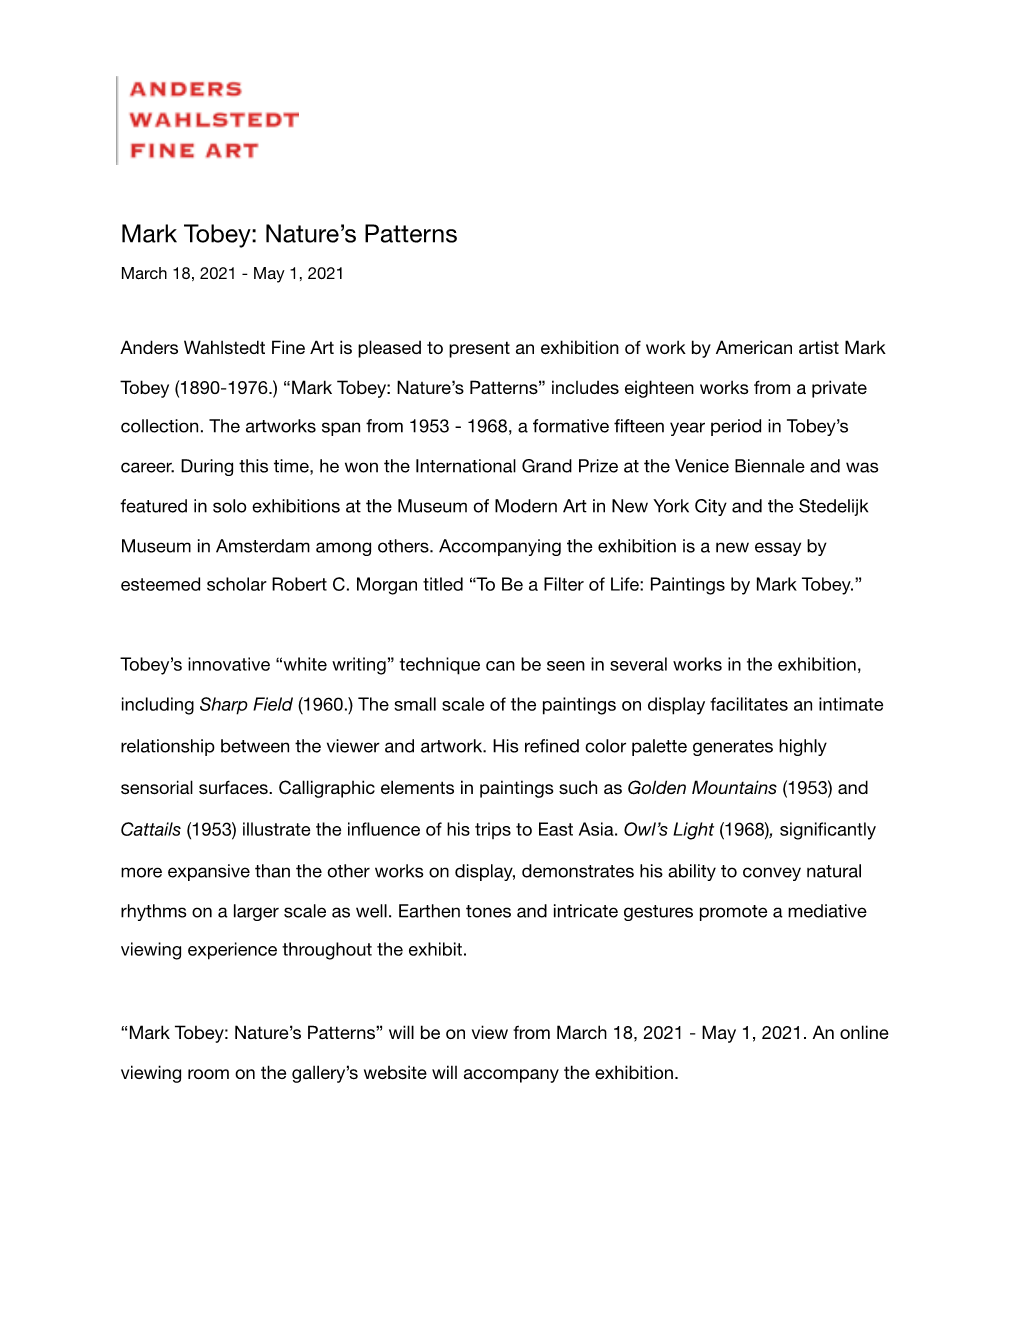 Mark Tobey Press Release